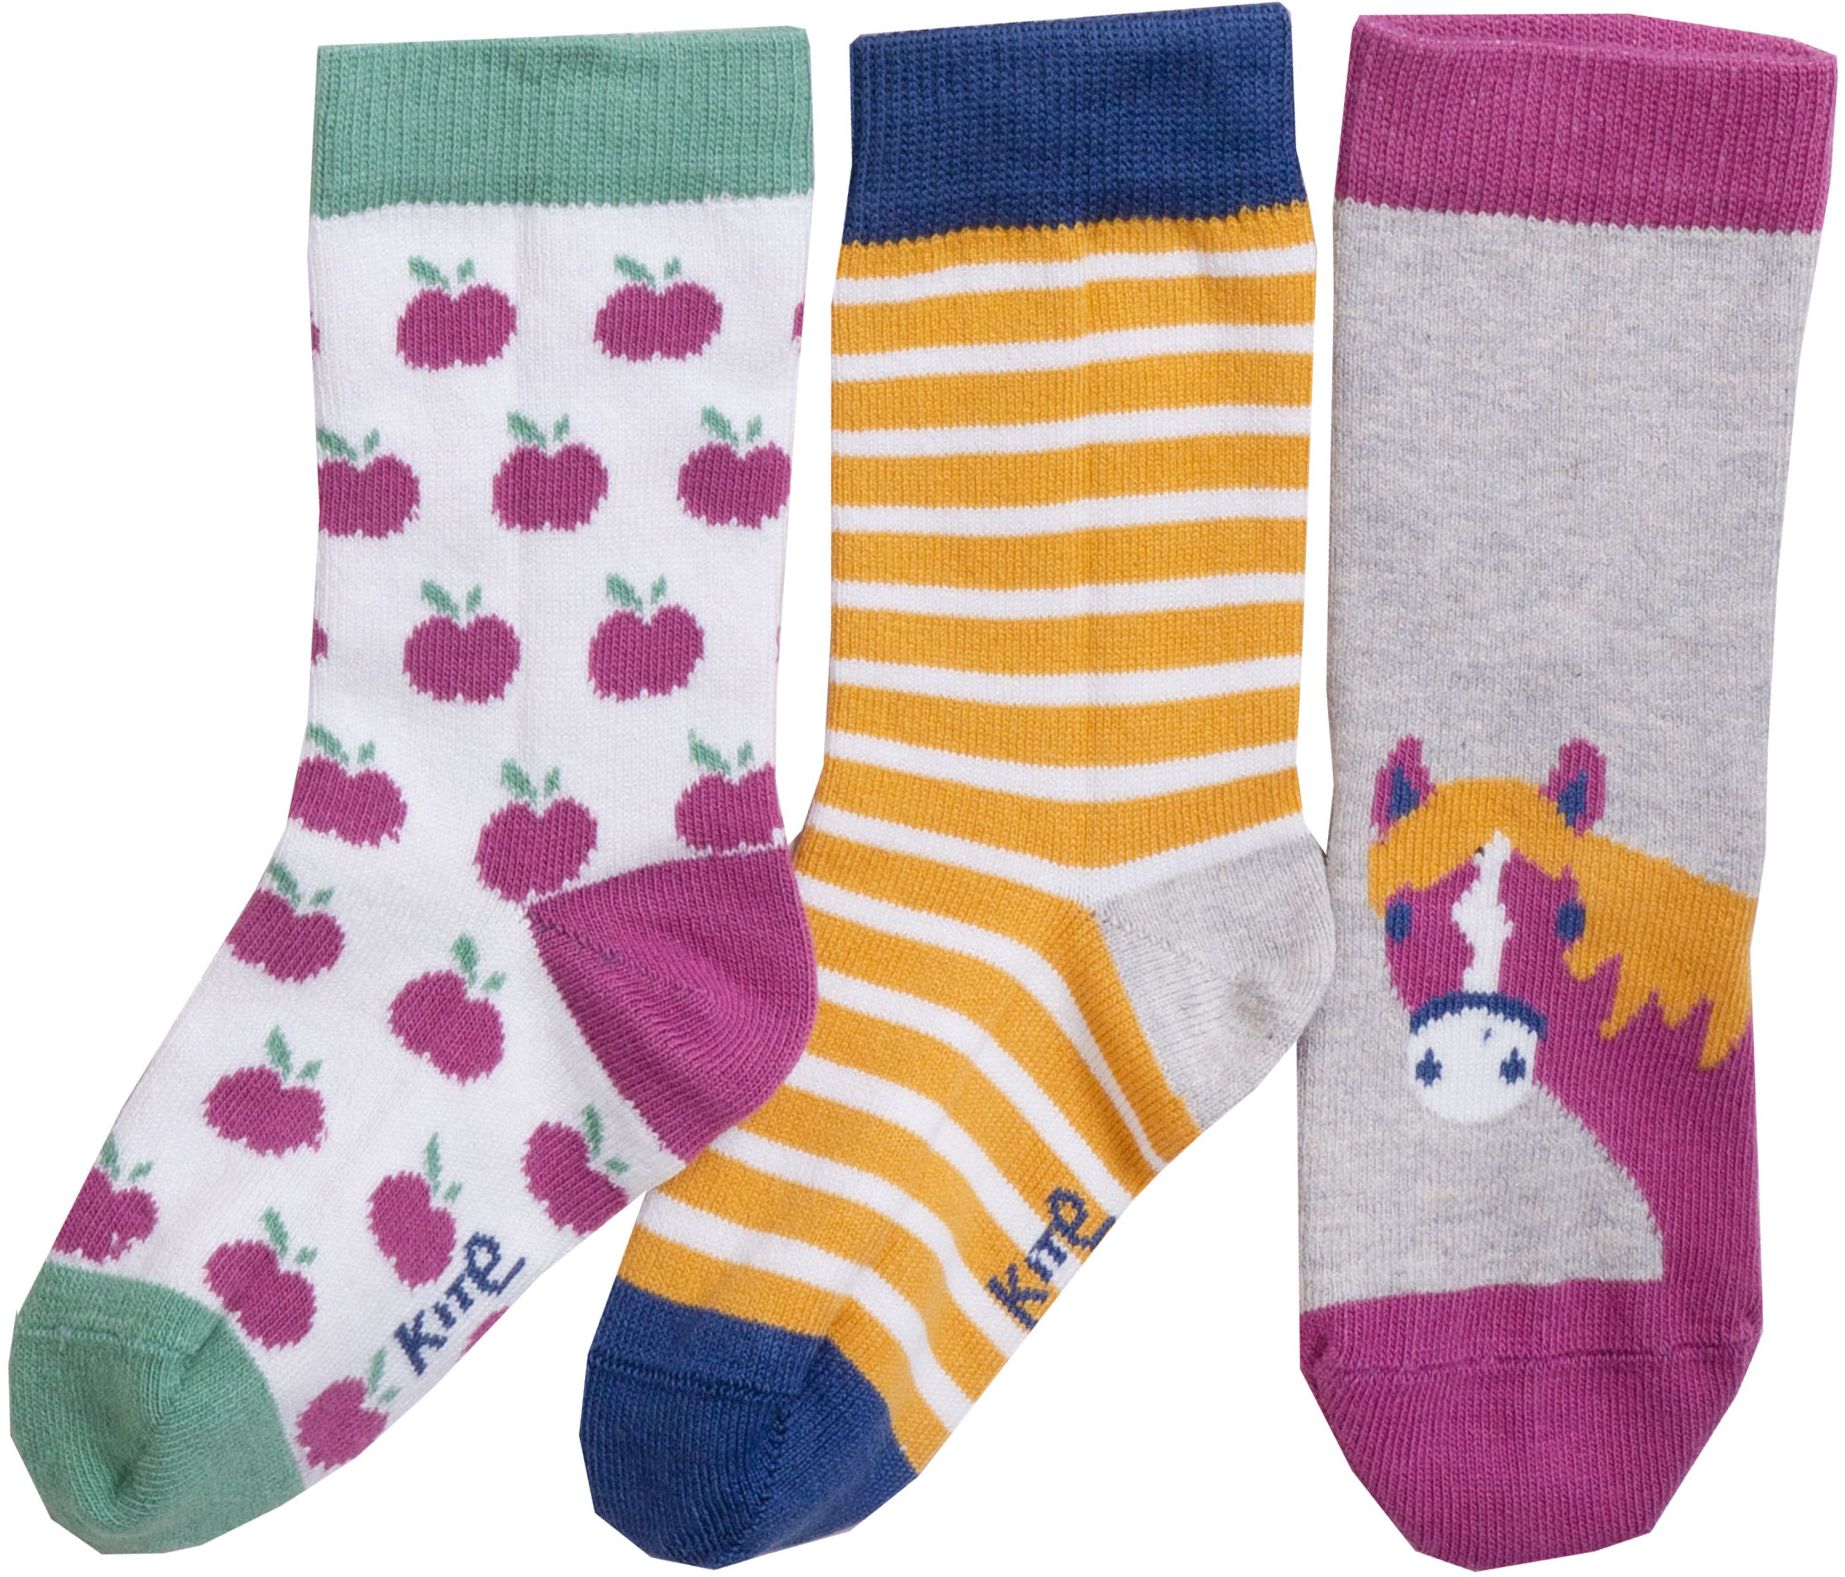 Gemusterte Kinder-Socken im 3er-Pack mit Pferd-Motiv